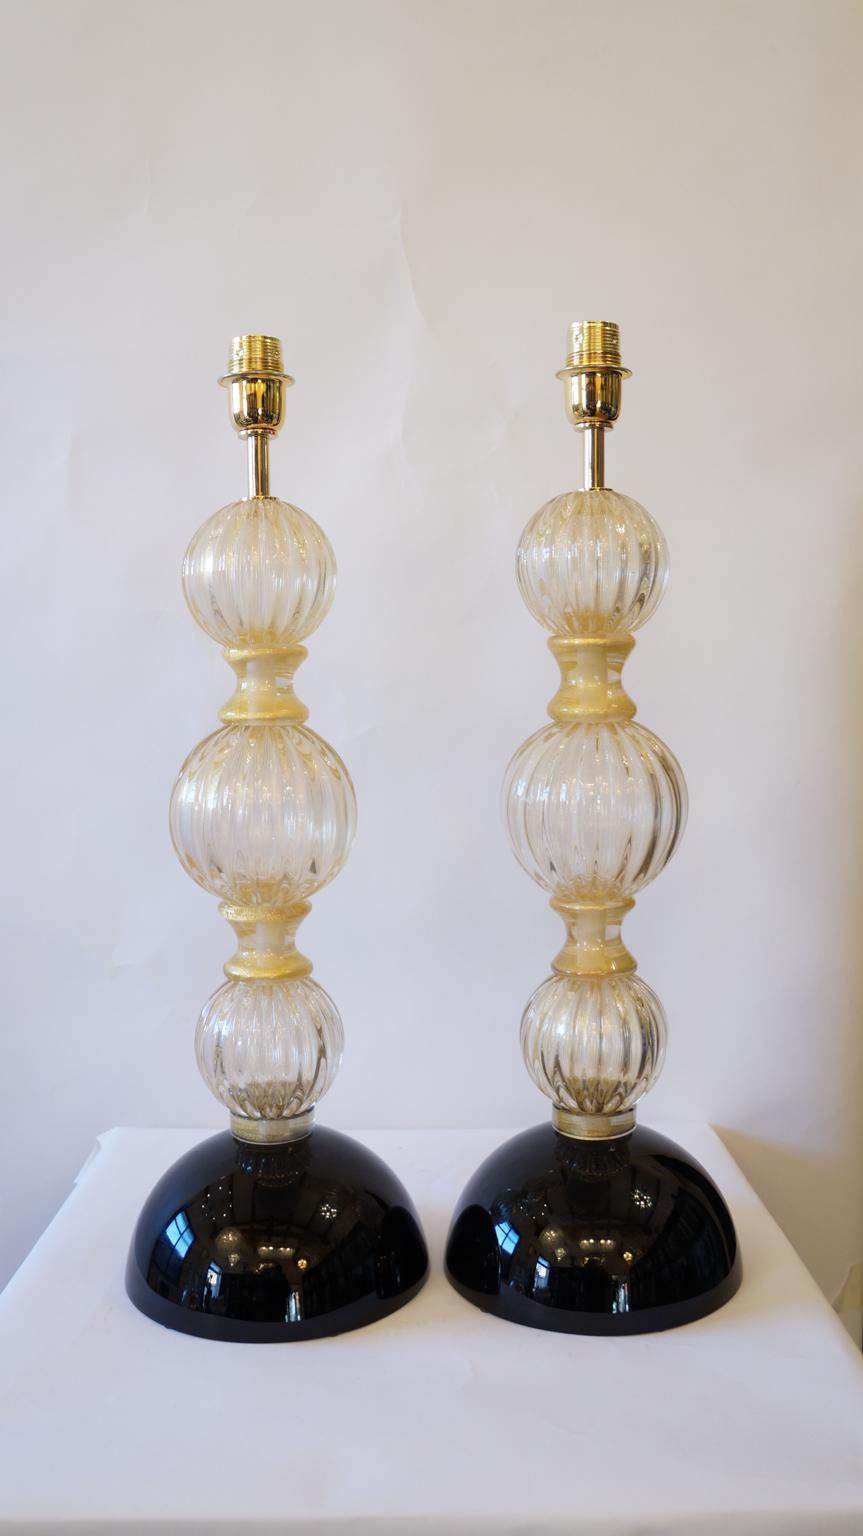 Es handelt sich um elegante Lampen, die Sie in der Abbildung sehen. 
Sie wurden zum ersten Mal 1985 von Toso Murano entworfen und sind wunderschön. 
Sie bestehen aus vier kugelförmigen Elementen, die durch Ringe aus 24-karätigem Gold voneinander